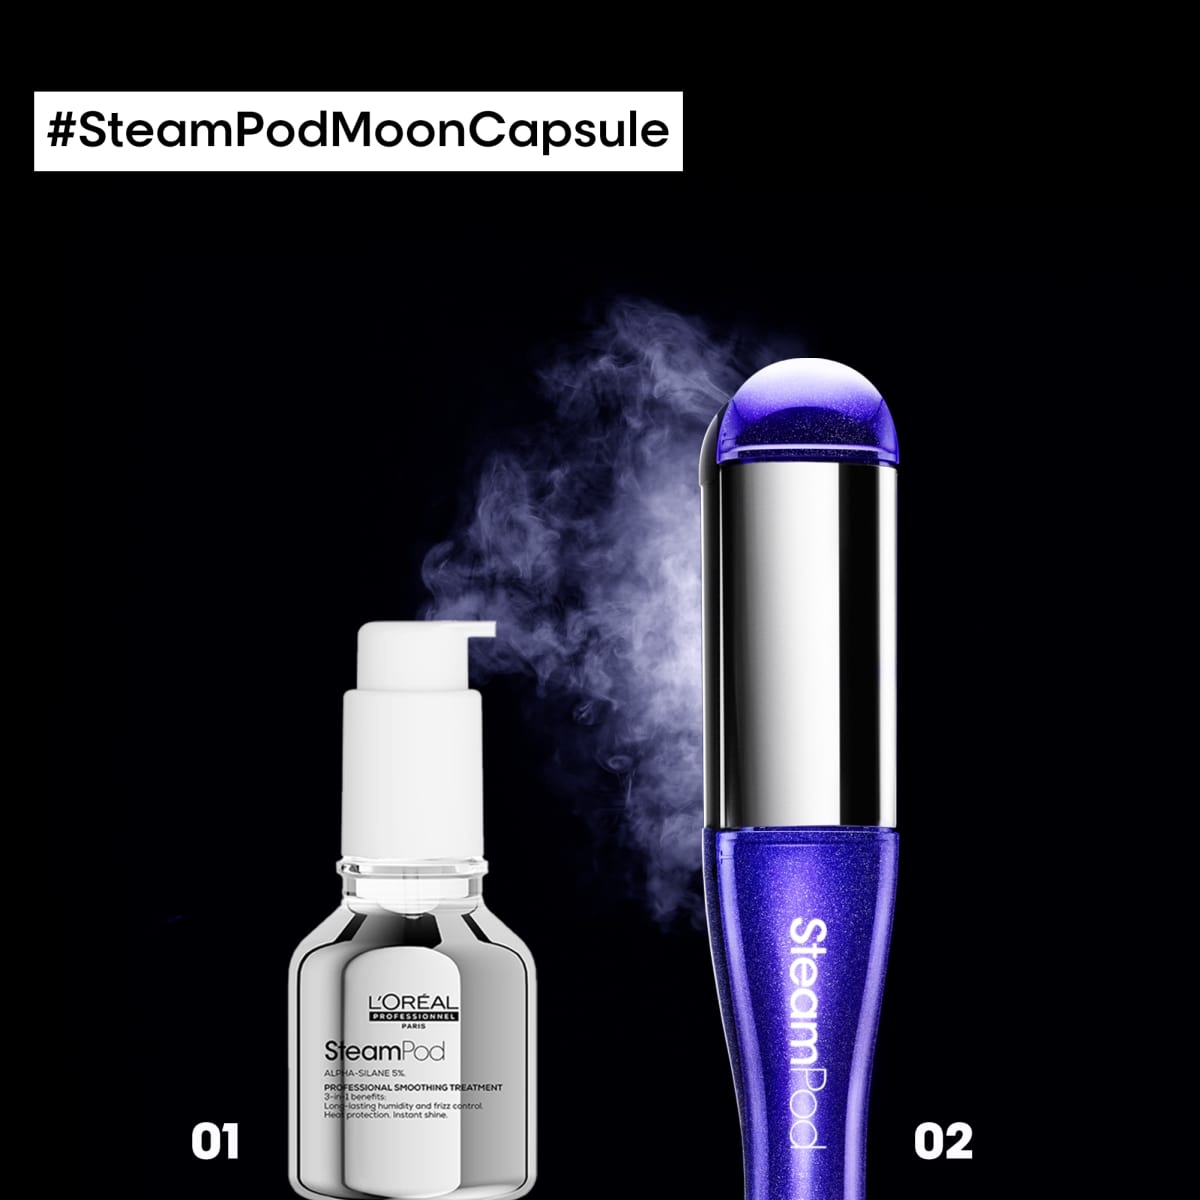 L'Oreal Professionnel - SteamPod 4 Moon Capsule •